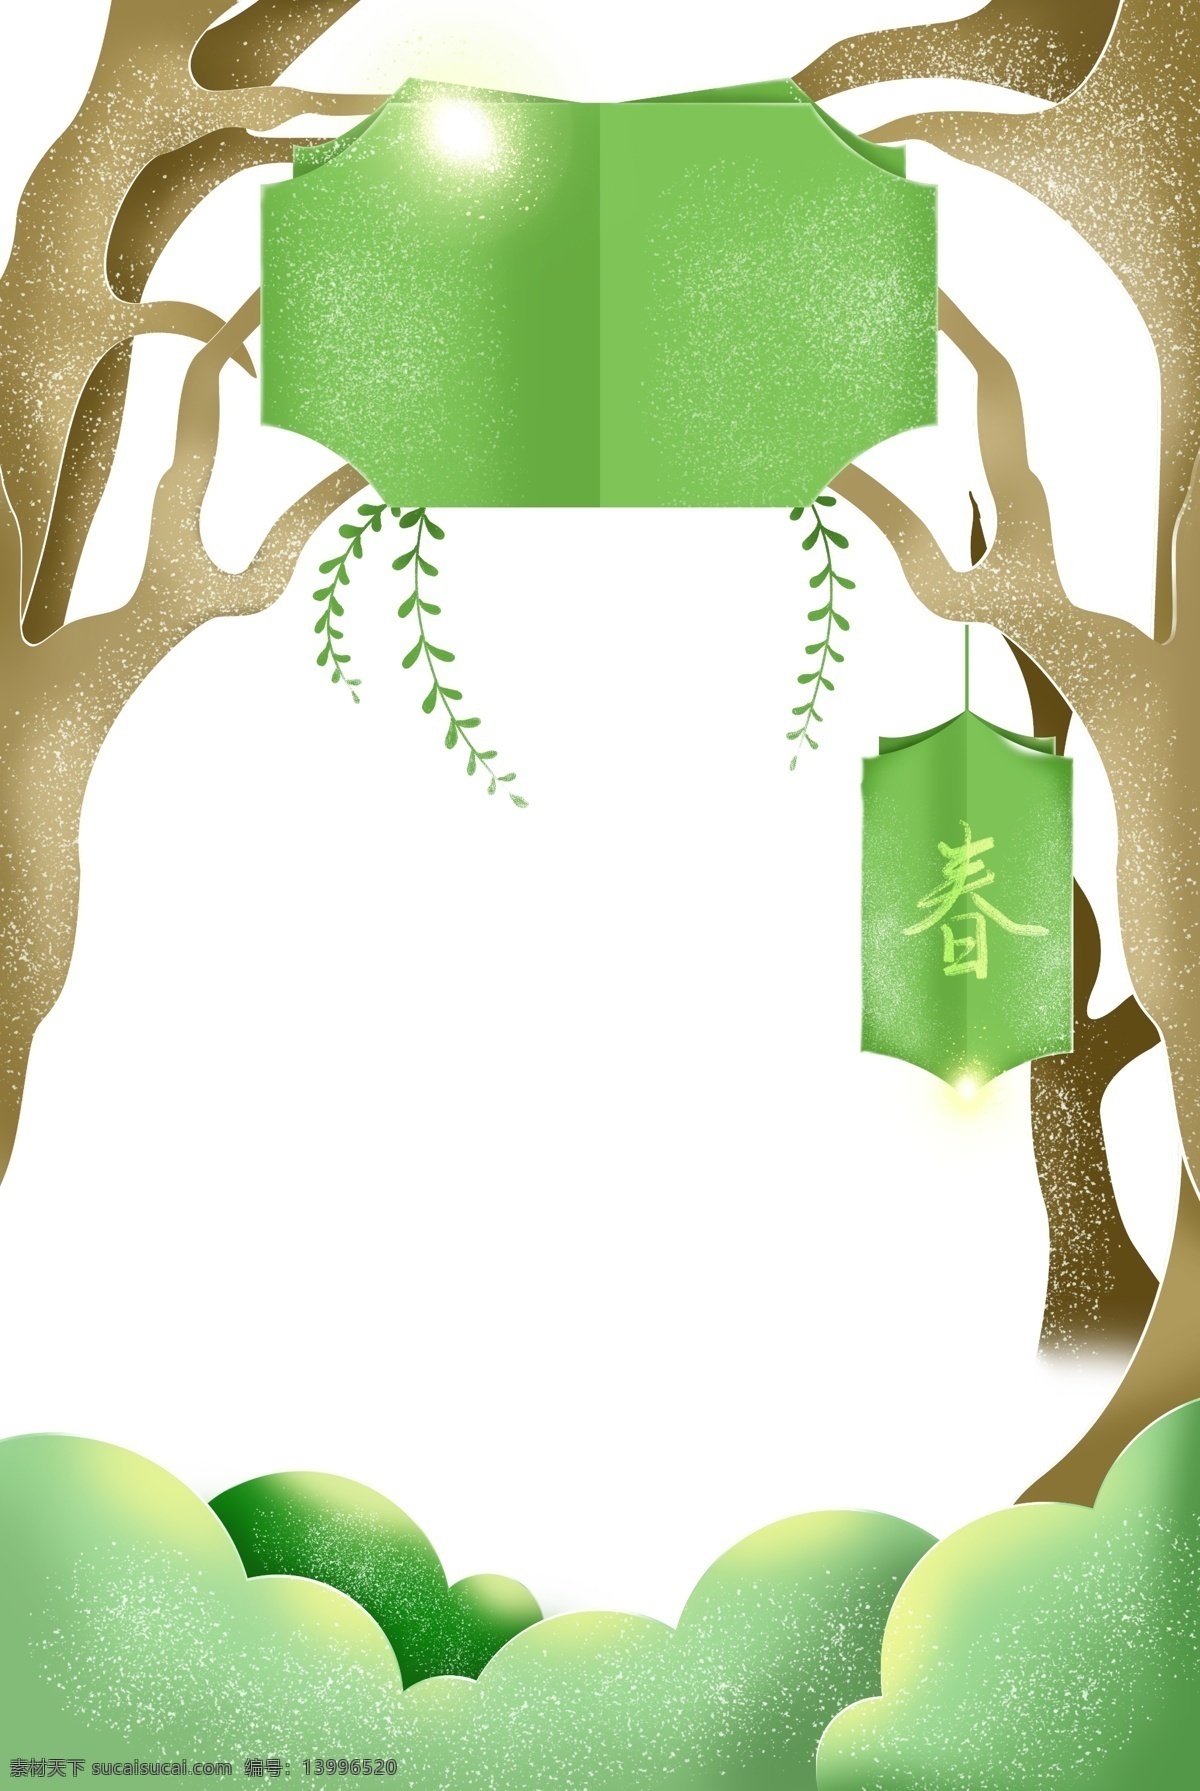 春天 发芽 树枝 立体 剪纸 海报 边框 春季 柳树 绿色 植物 梦幻 装饰 枝条 芽 树 文字边框